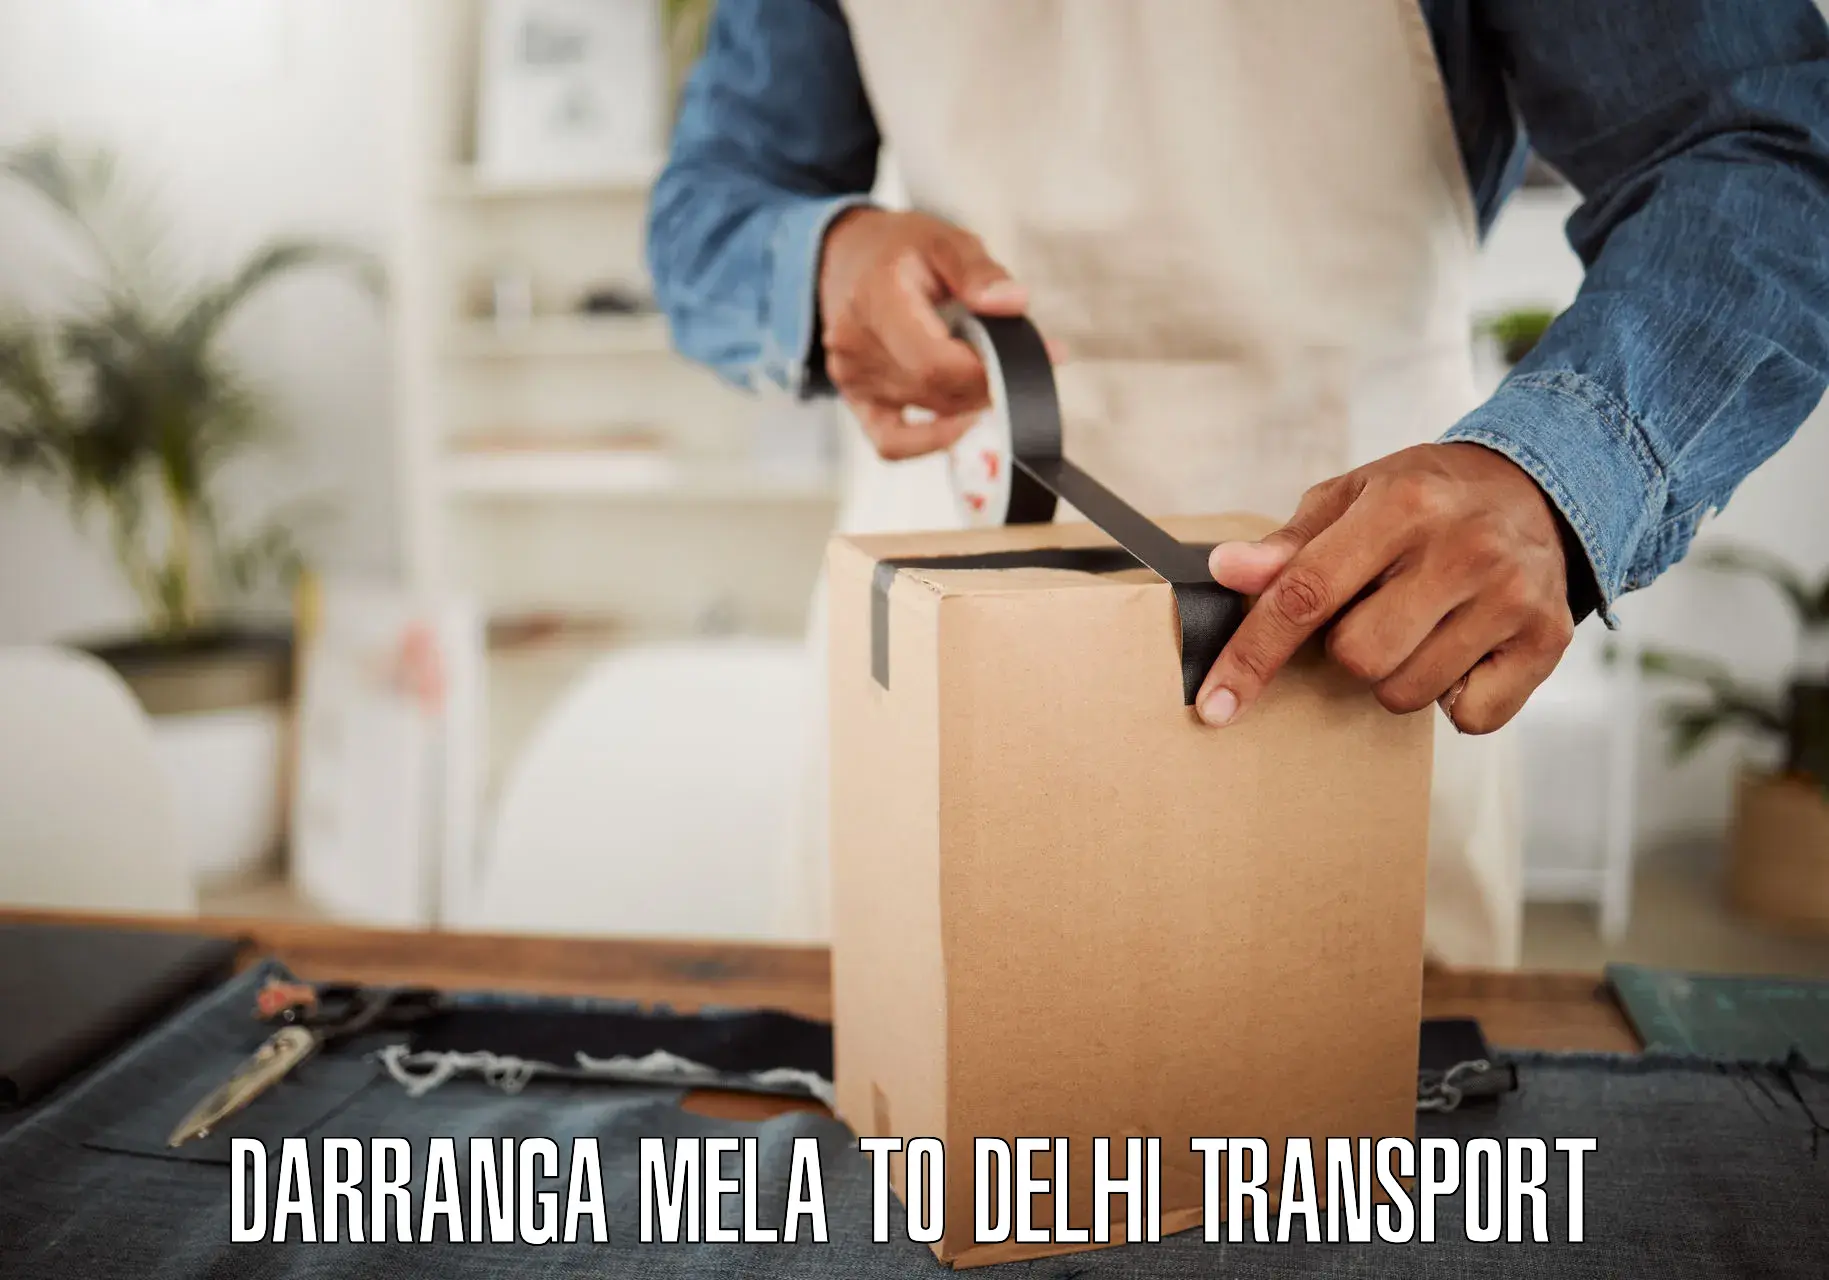 Express transport services Darranga Mela to Delhi